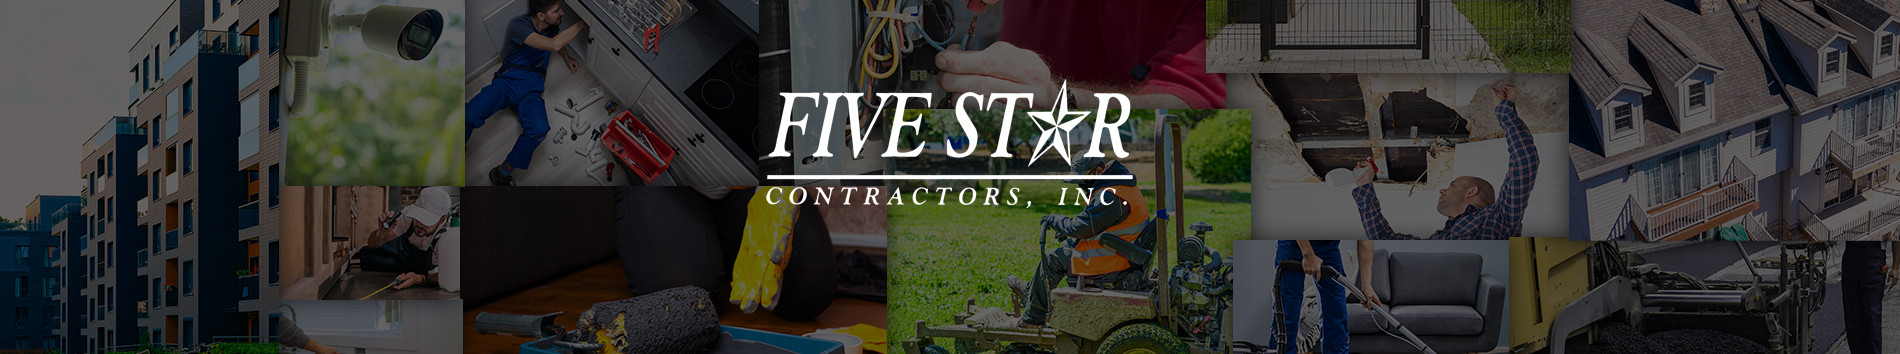 Five Star Contractors, Inc. (Secondary)